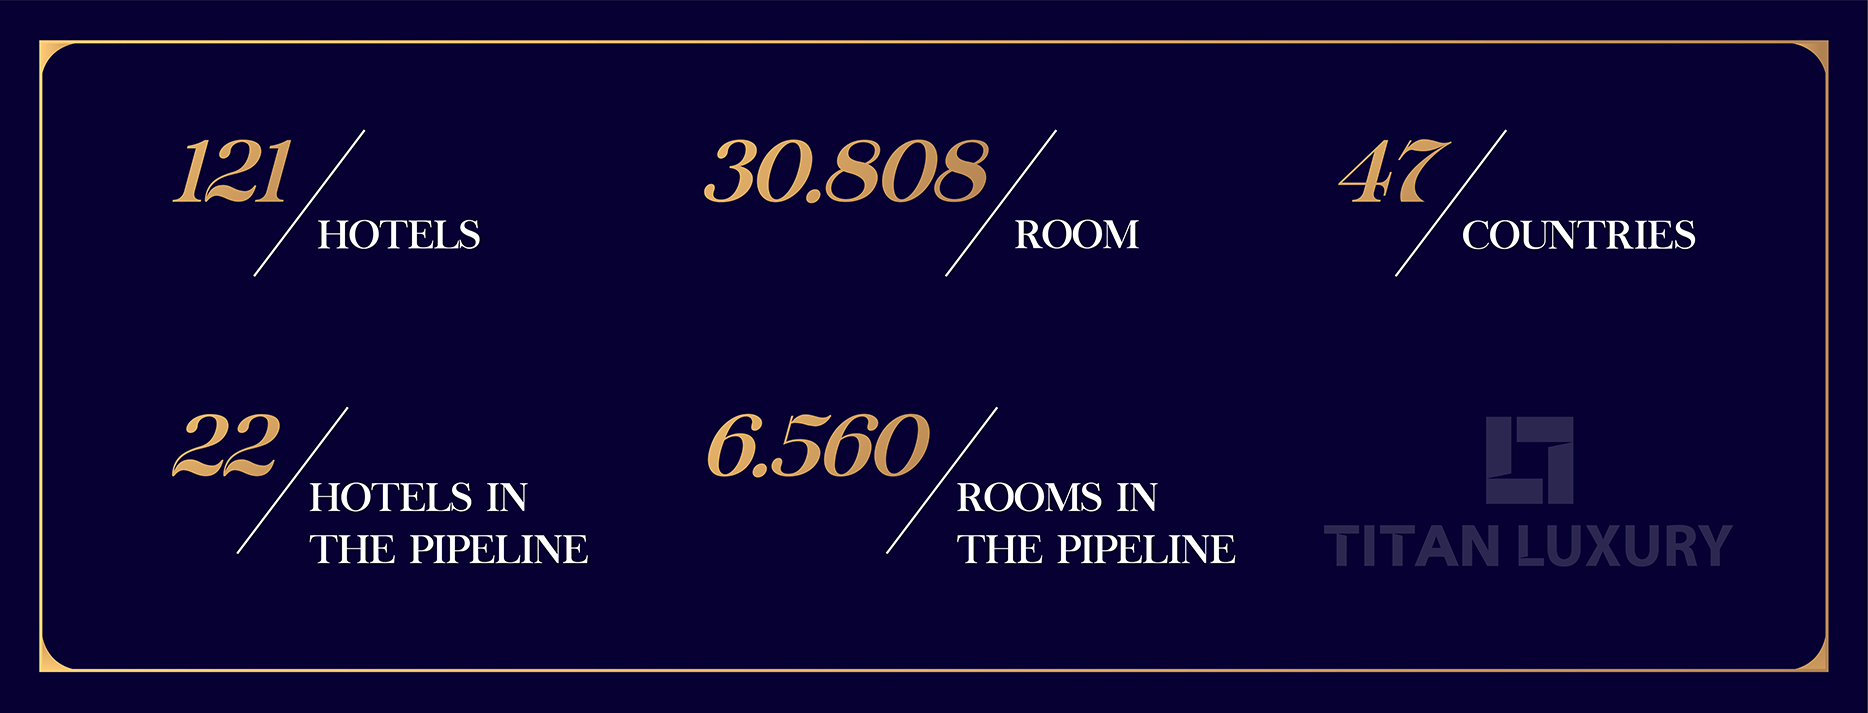 Sofitel Hotel & Resorts là thương hiệu có quy mô lớn nhất trong hệ thống khách sạn thuộc Accor Group